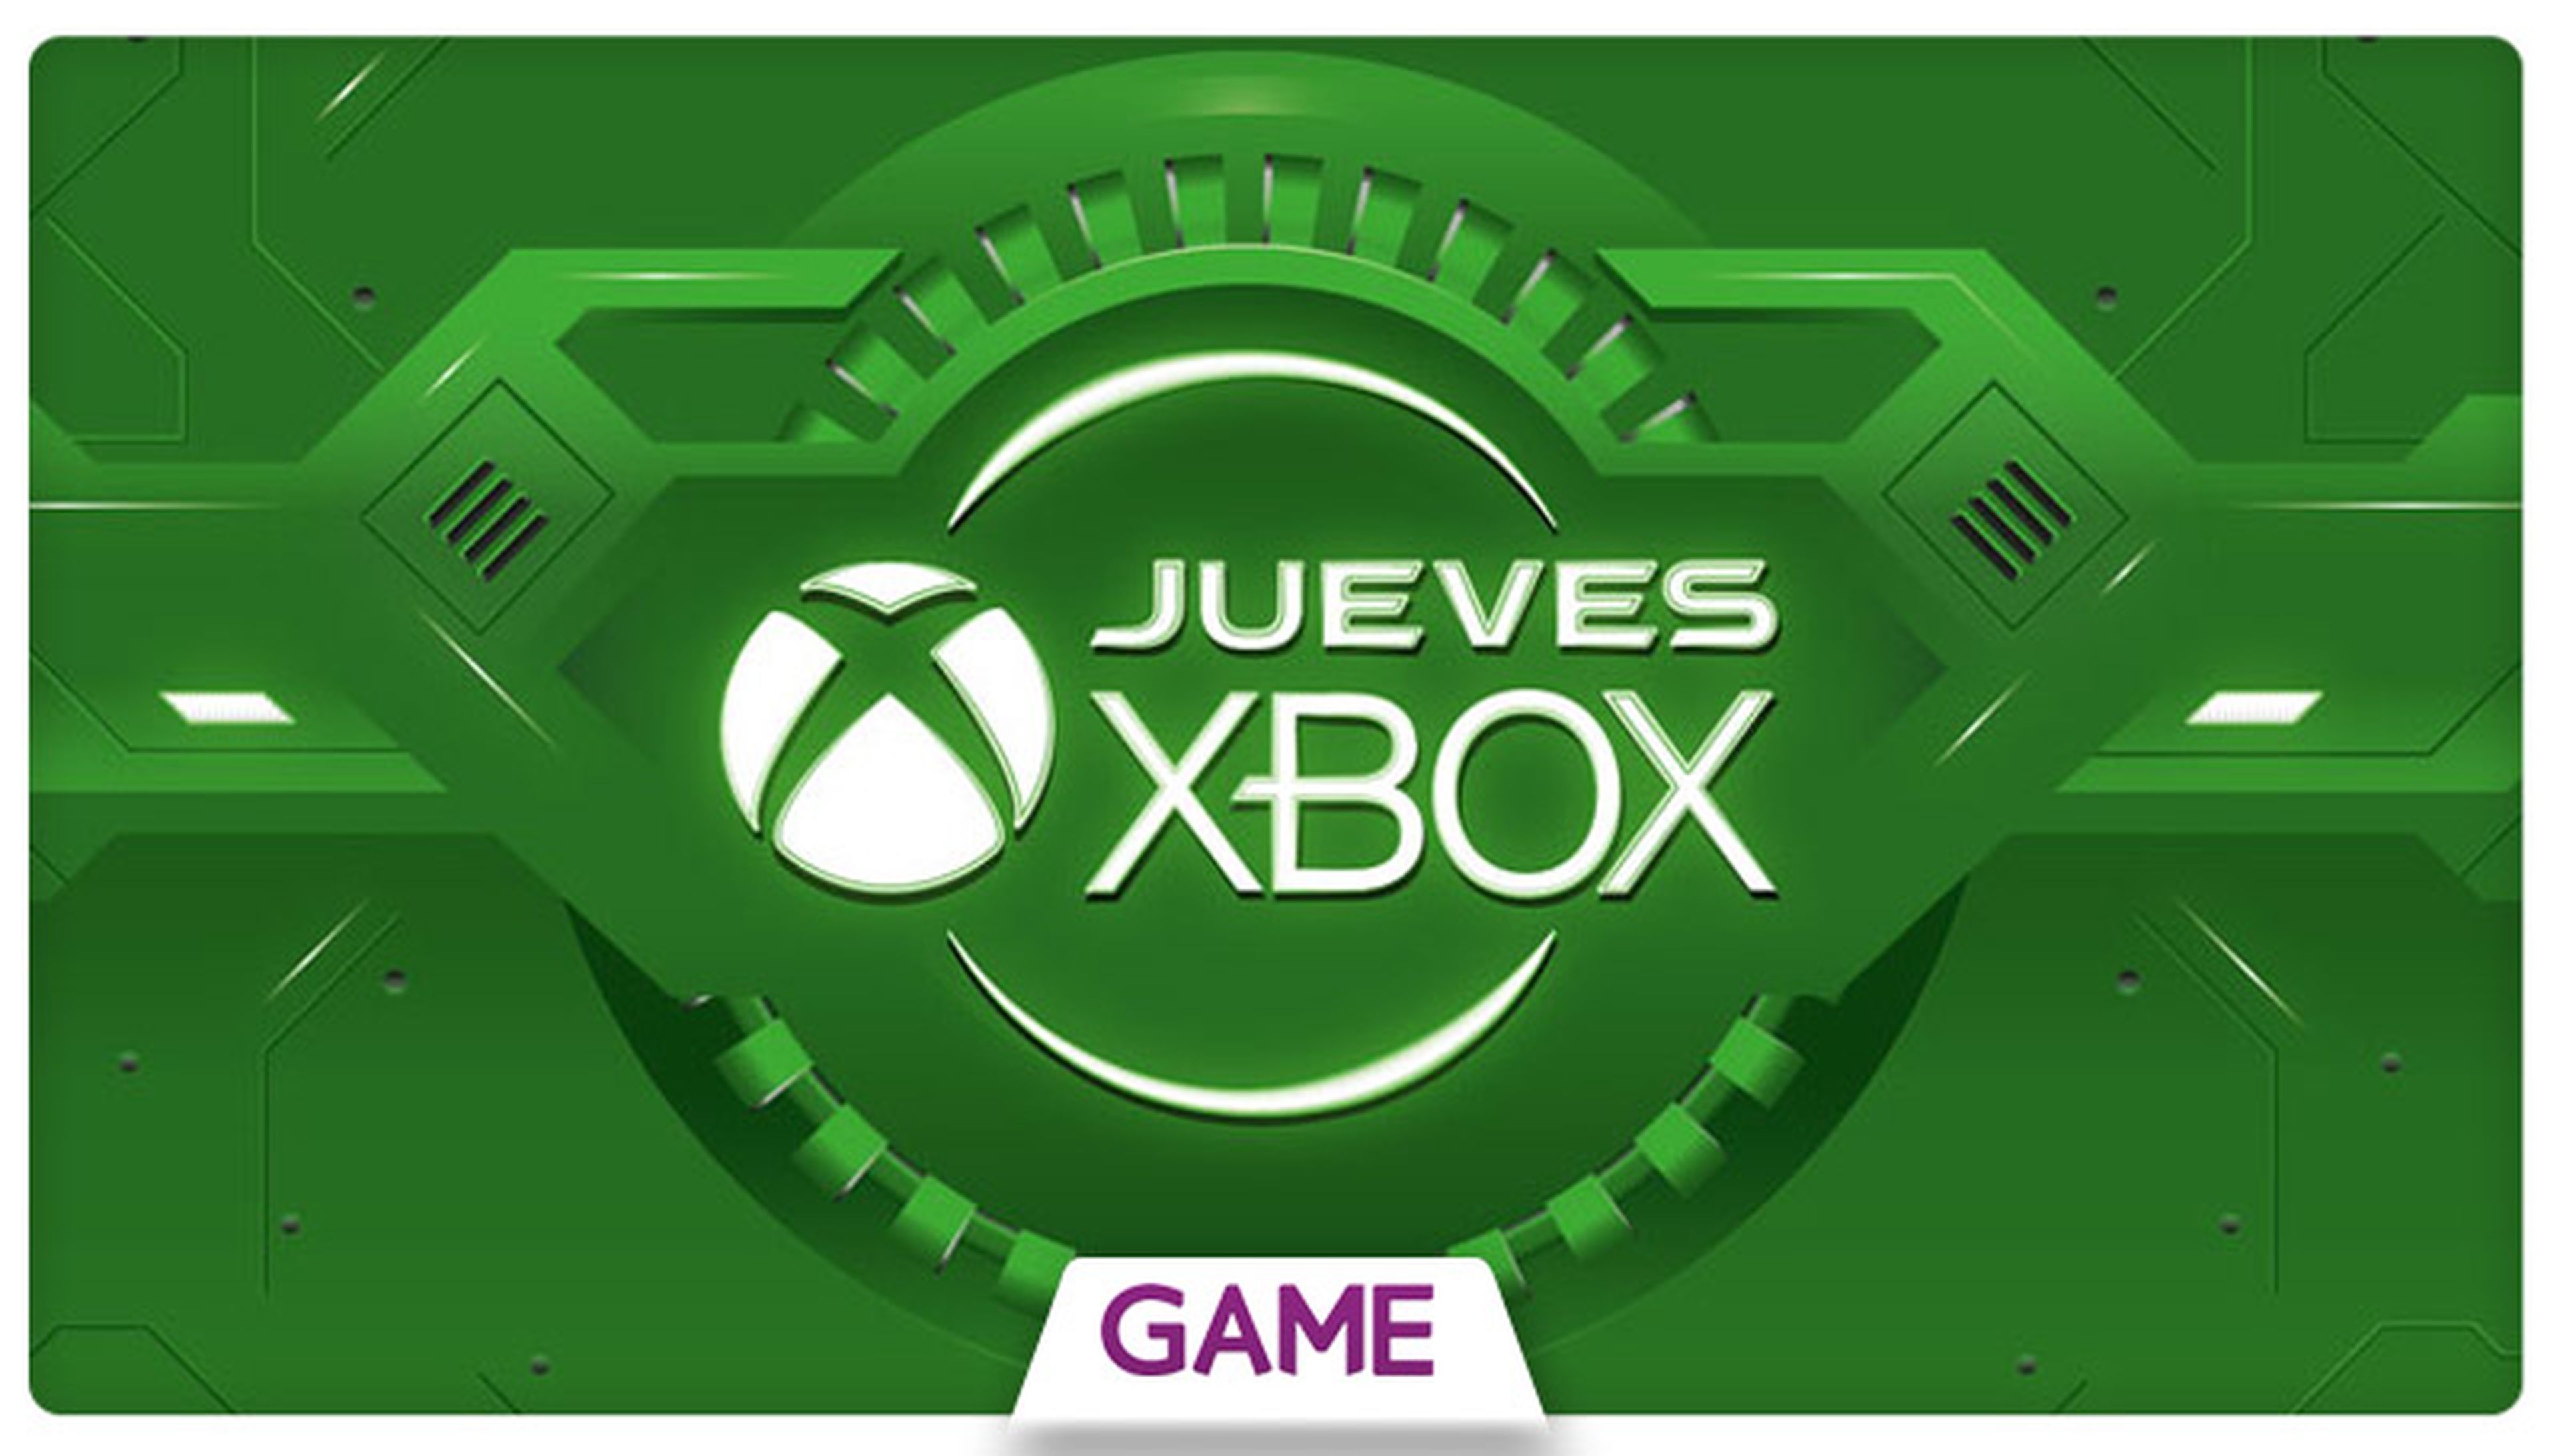 Jueves Xbox en GAME: Ofertas del 15/10/2015